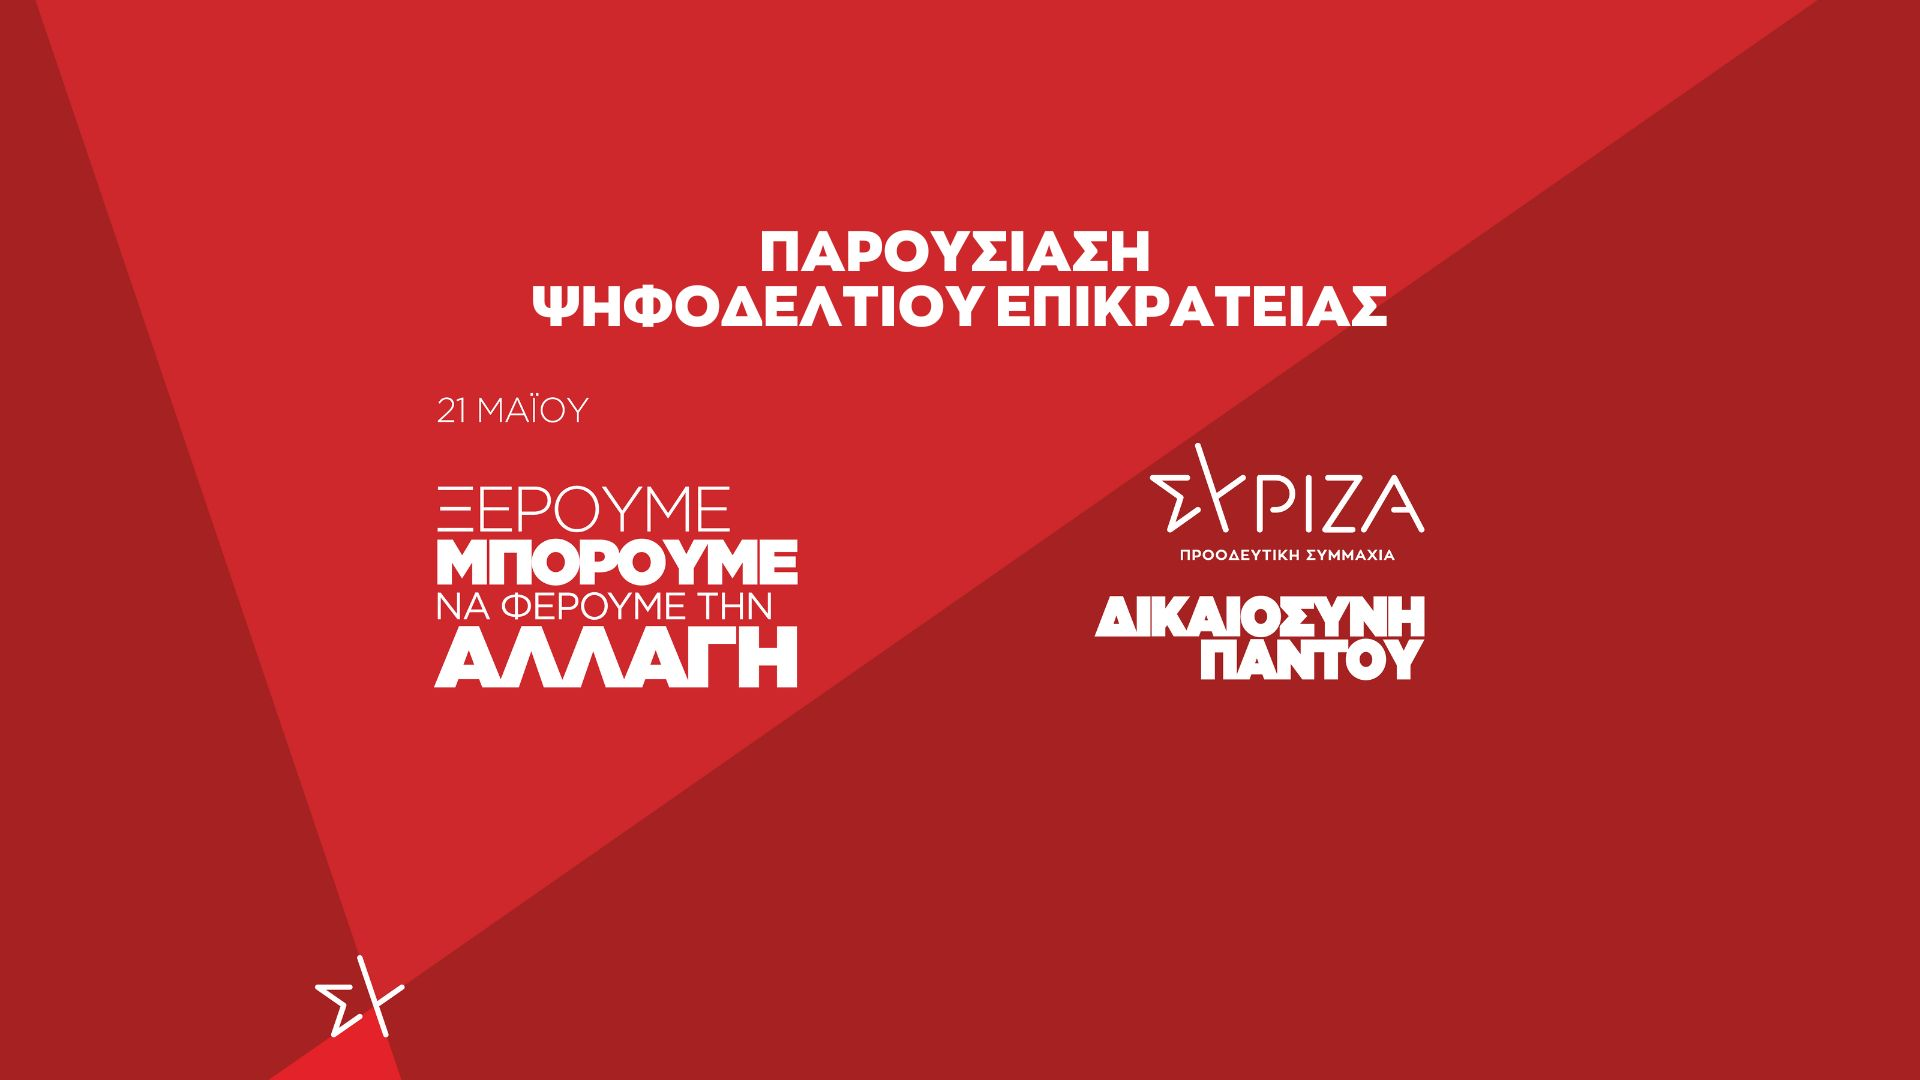 Το ψηφοδέλτιο Επικρατείας του ΣΥΡΙΖΑ - Προοδευτική Συμμαχία